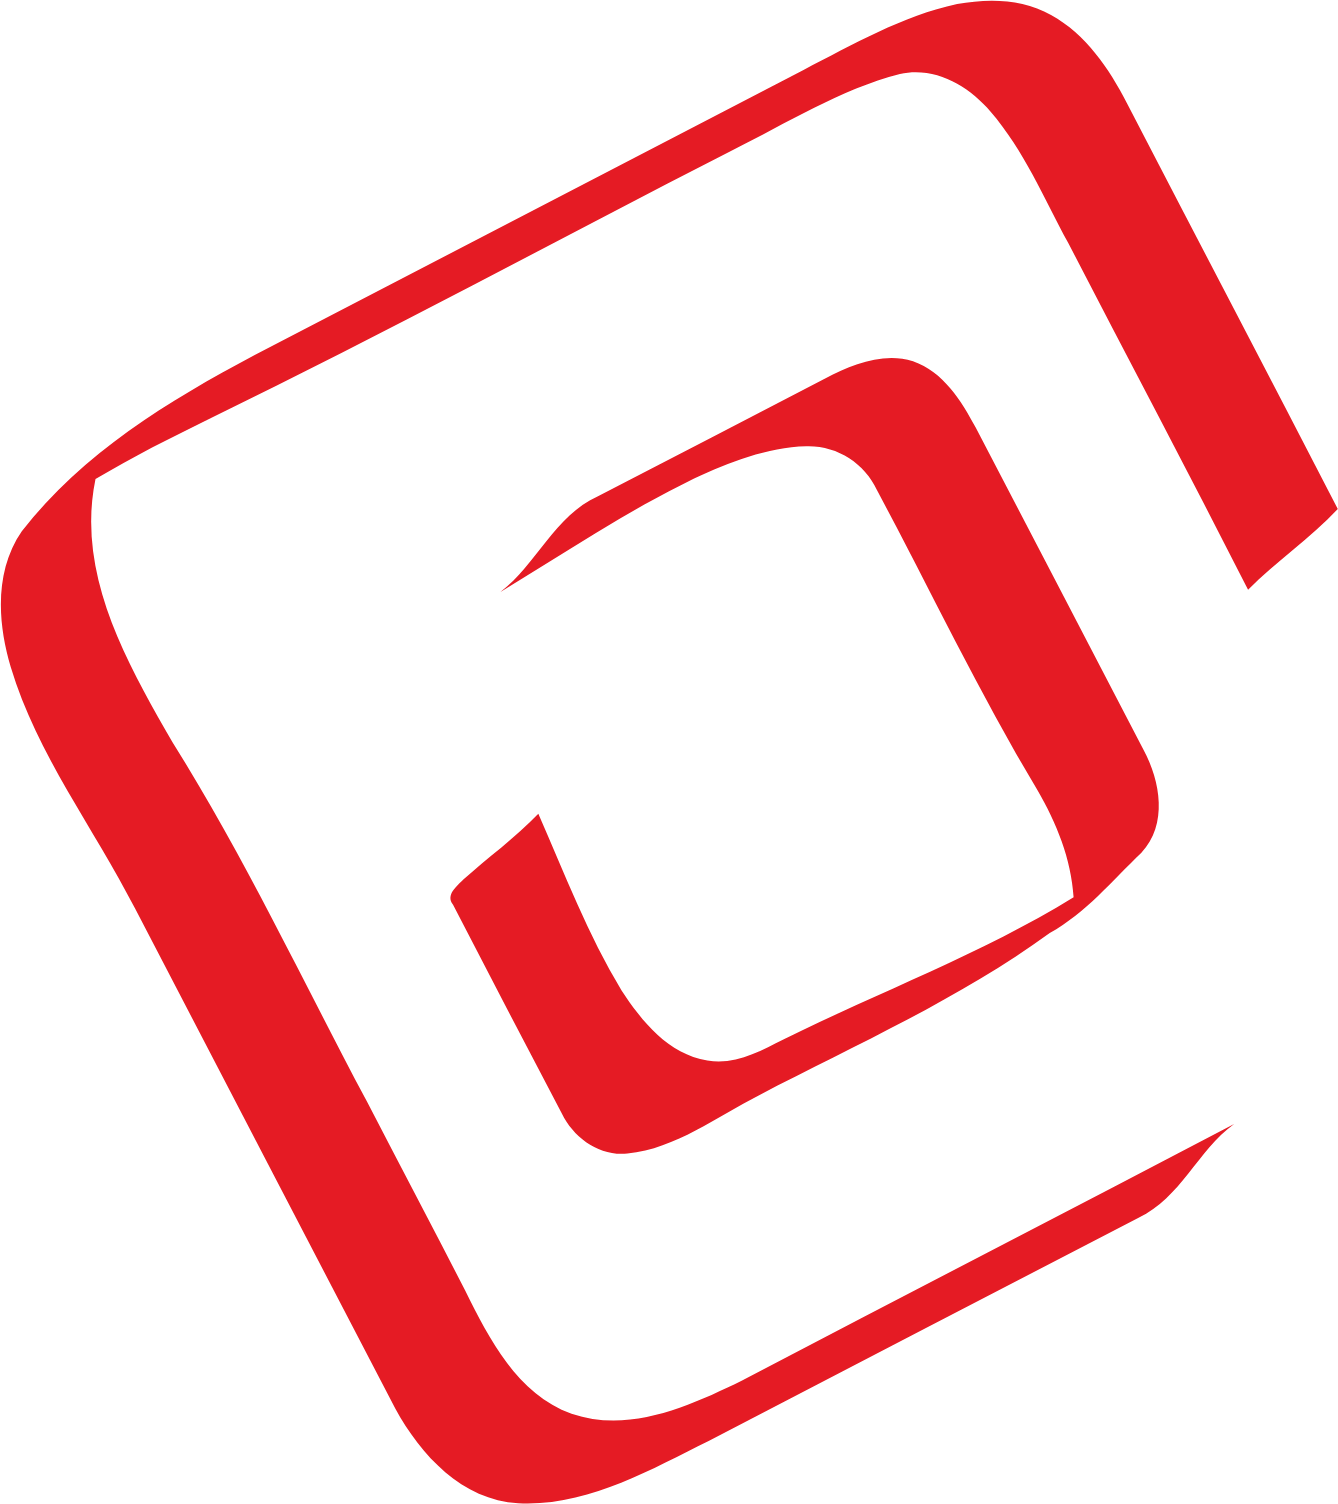 Mobilicom logo (PNG transparent)